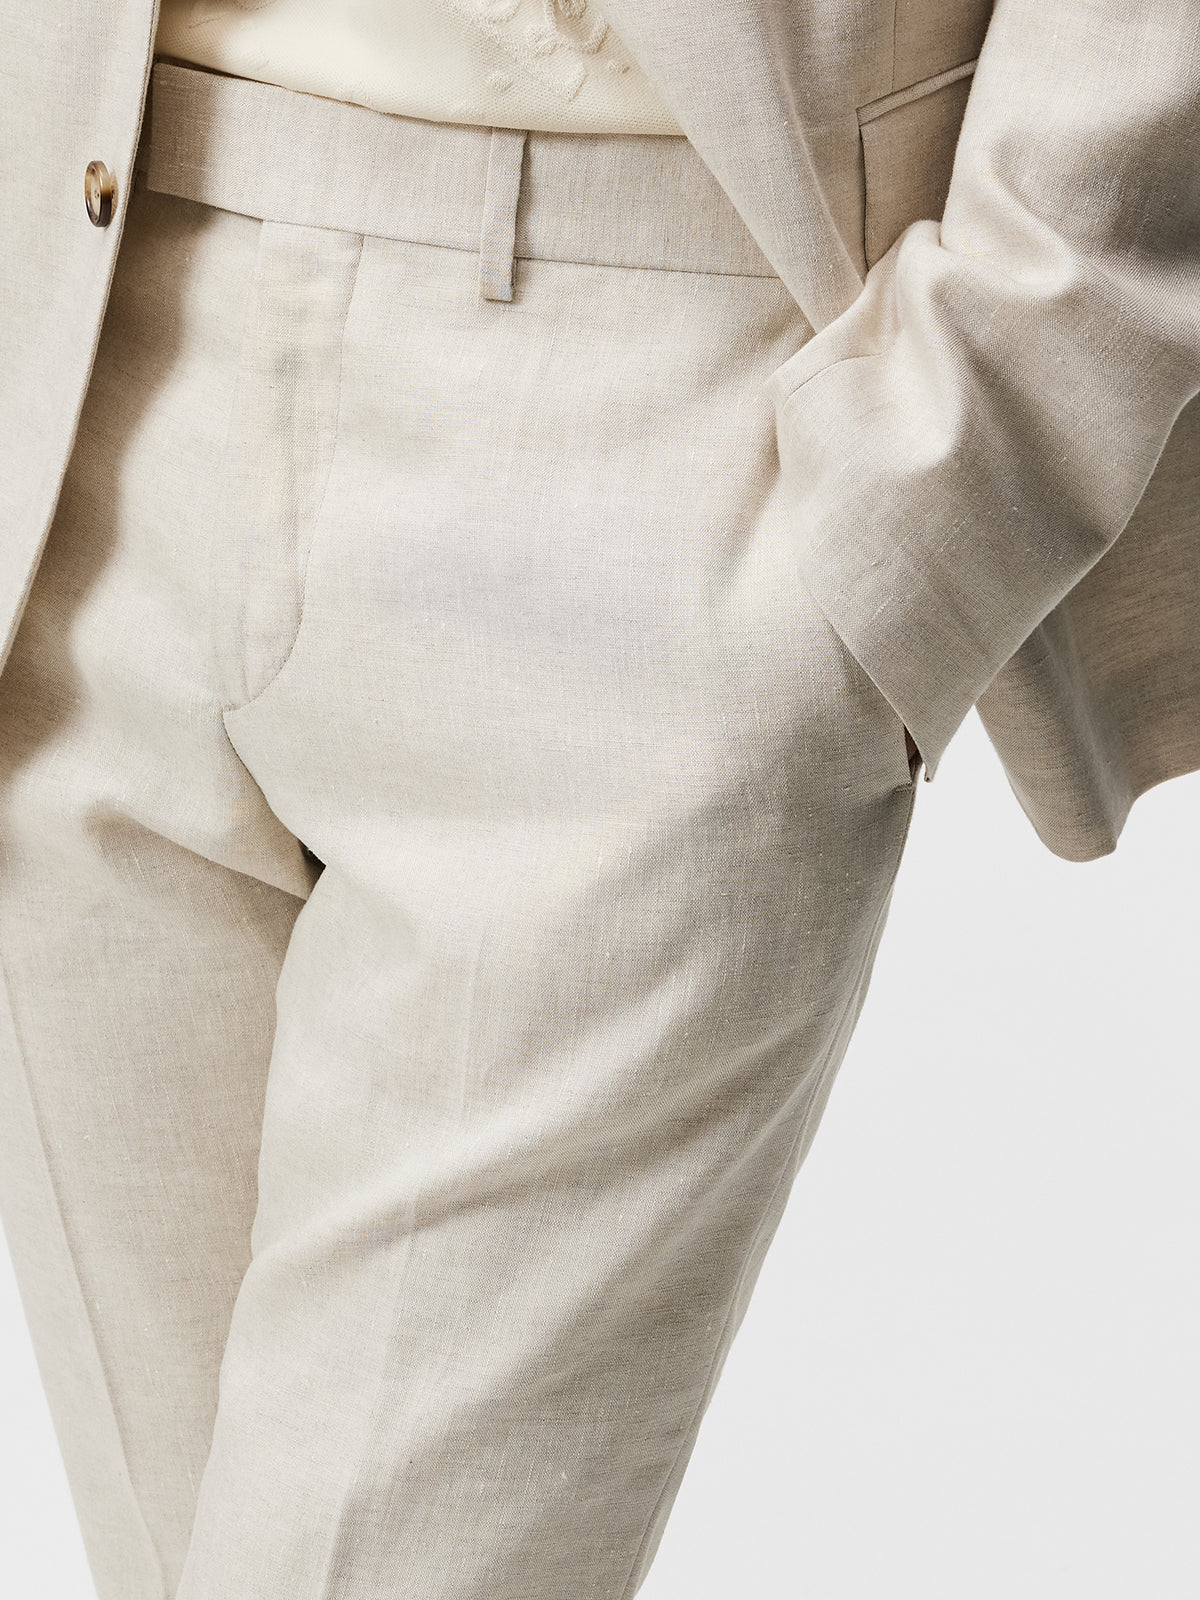 Grant Super Linen Pants / Safari Beige